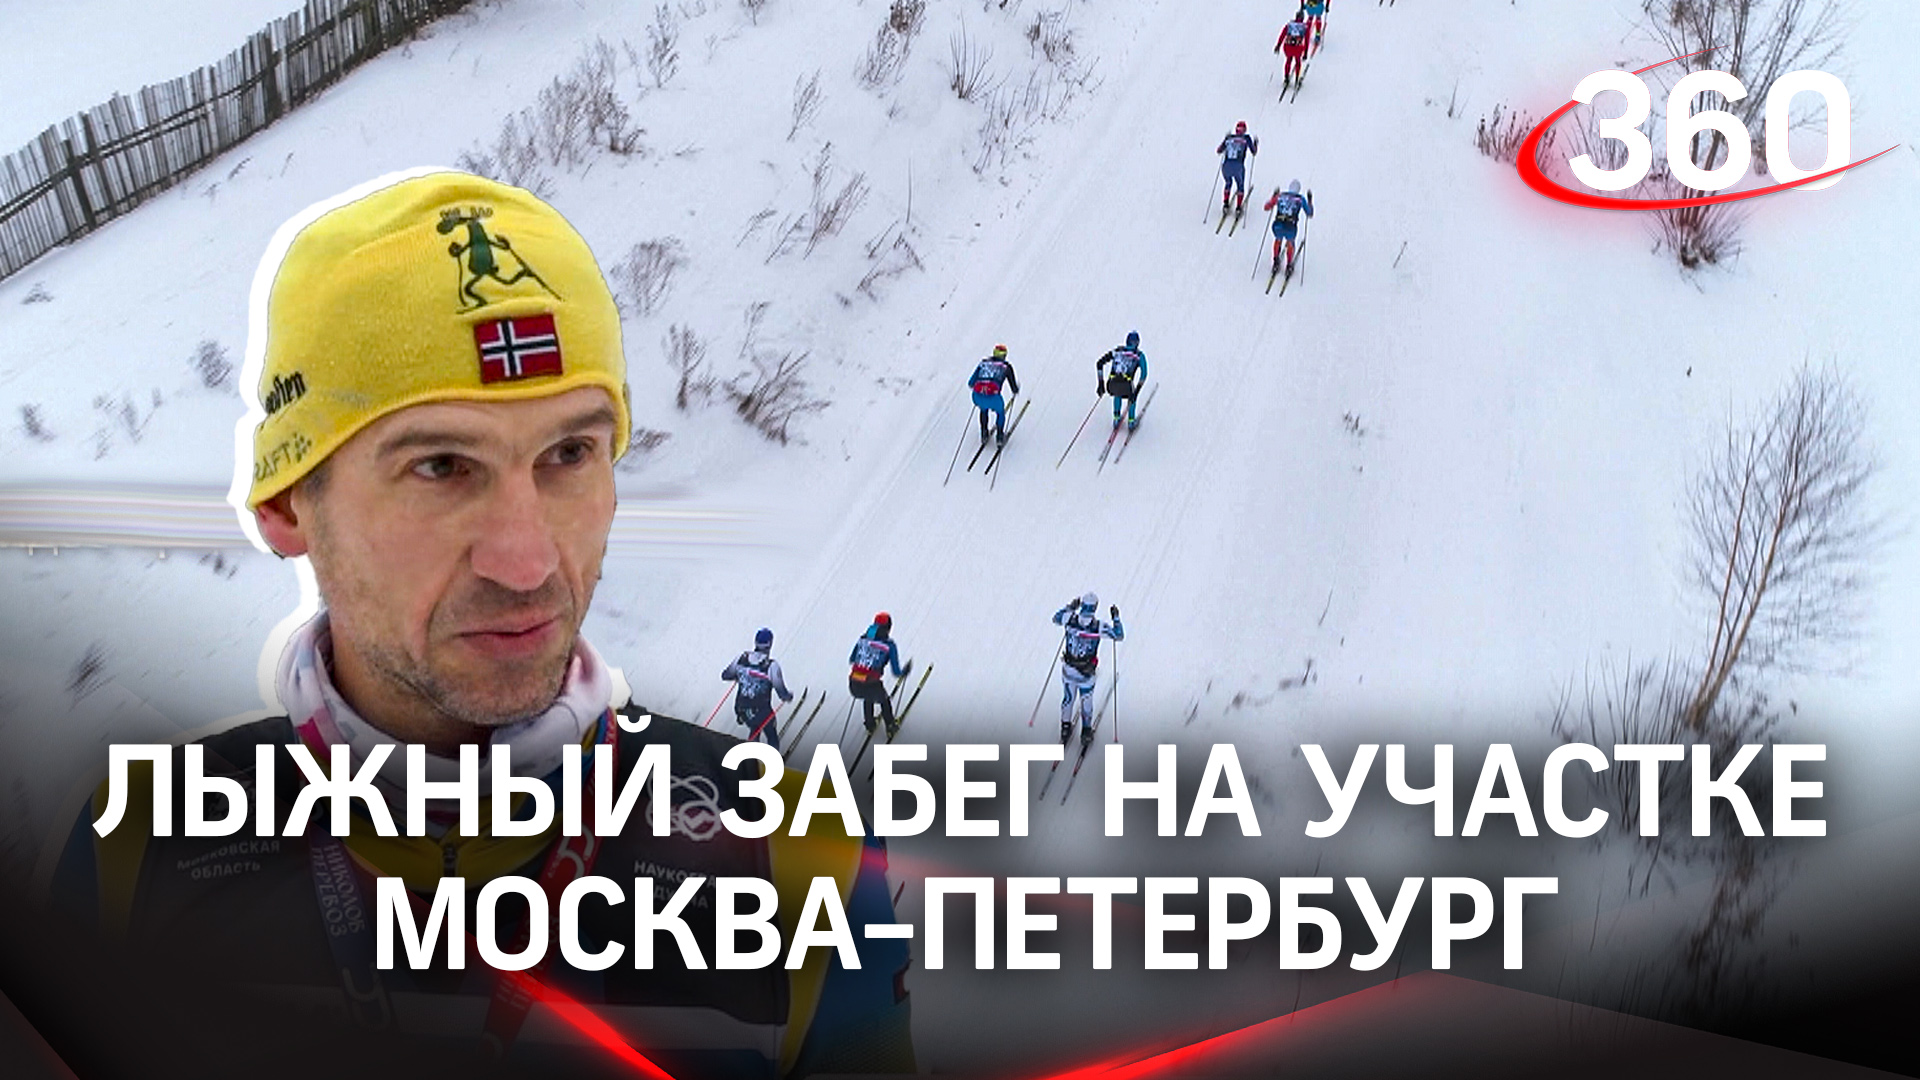 Первый лыжный забег на участке трассы Москва-Санкт-Петербург прошел в Дмитрове